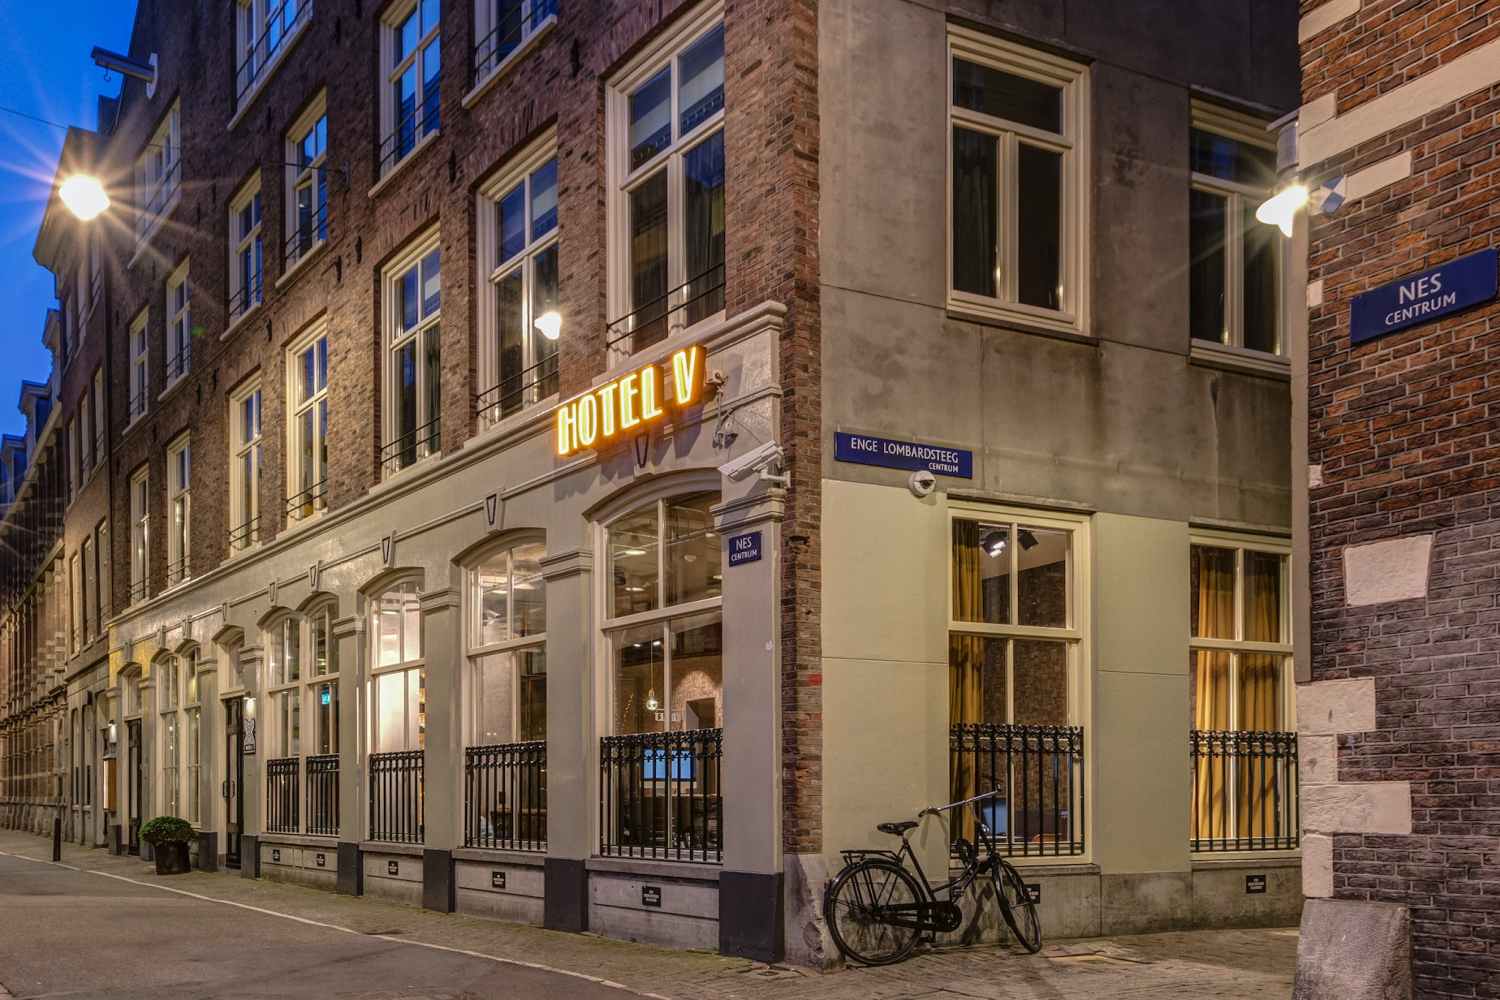 Hotel V Nesplein Amsterdam - Netherlands